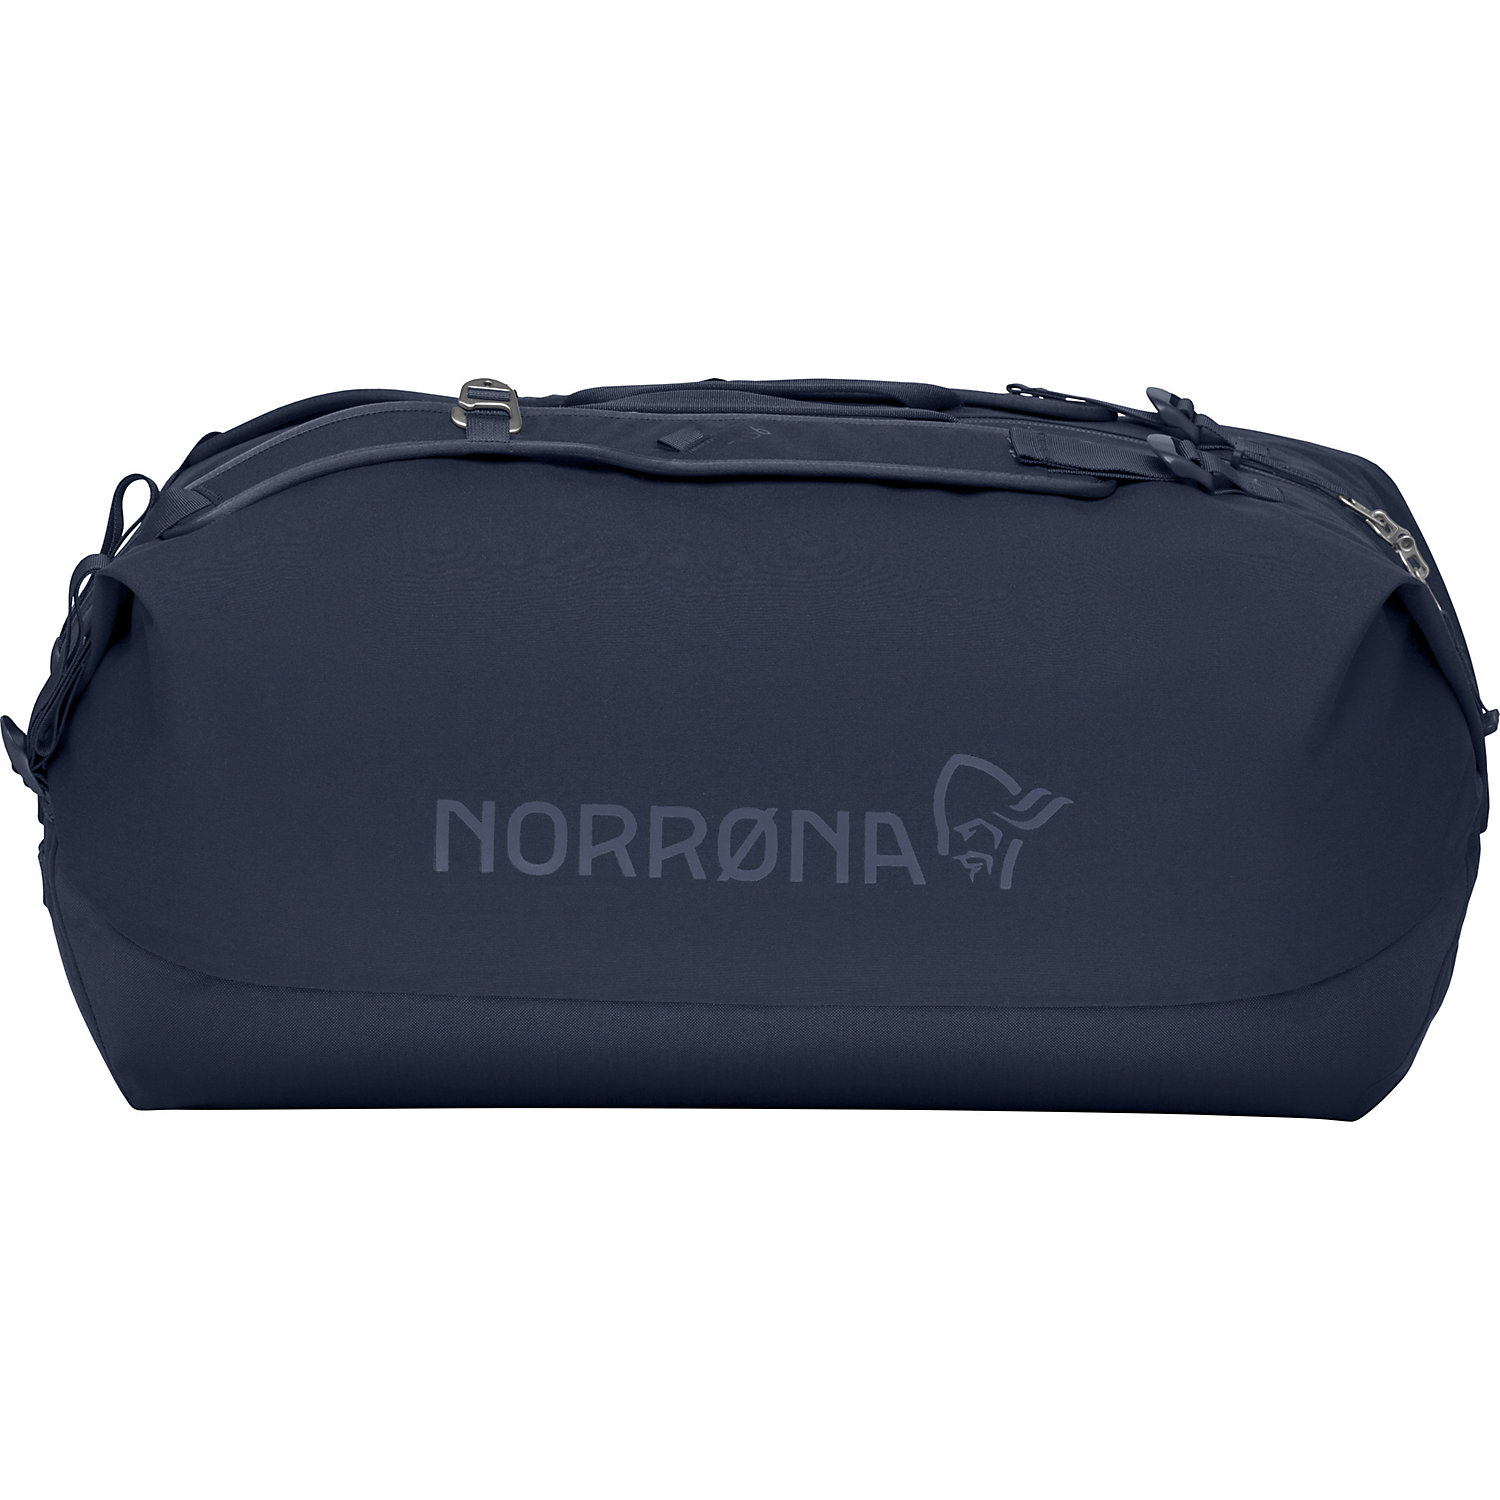 Norrona 70L Duffel Bag